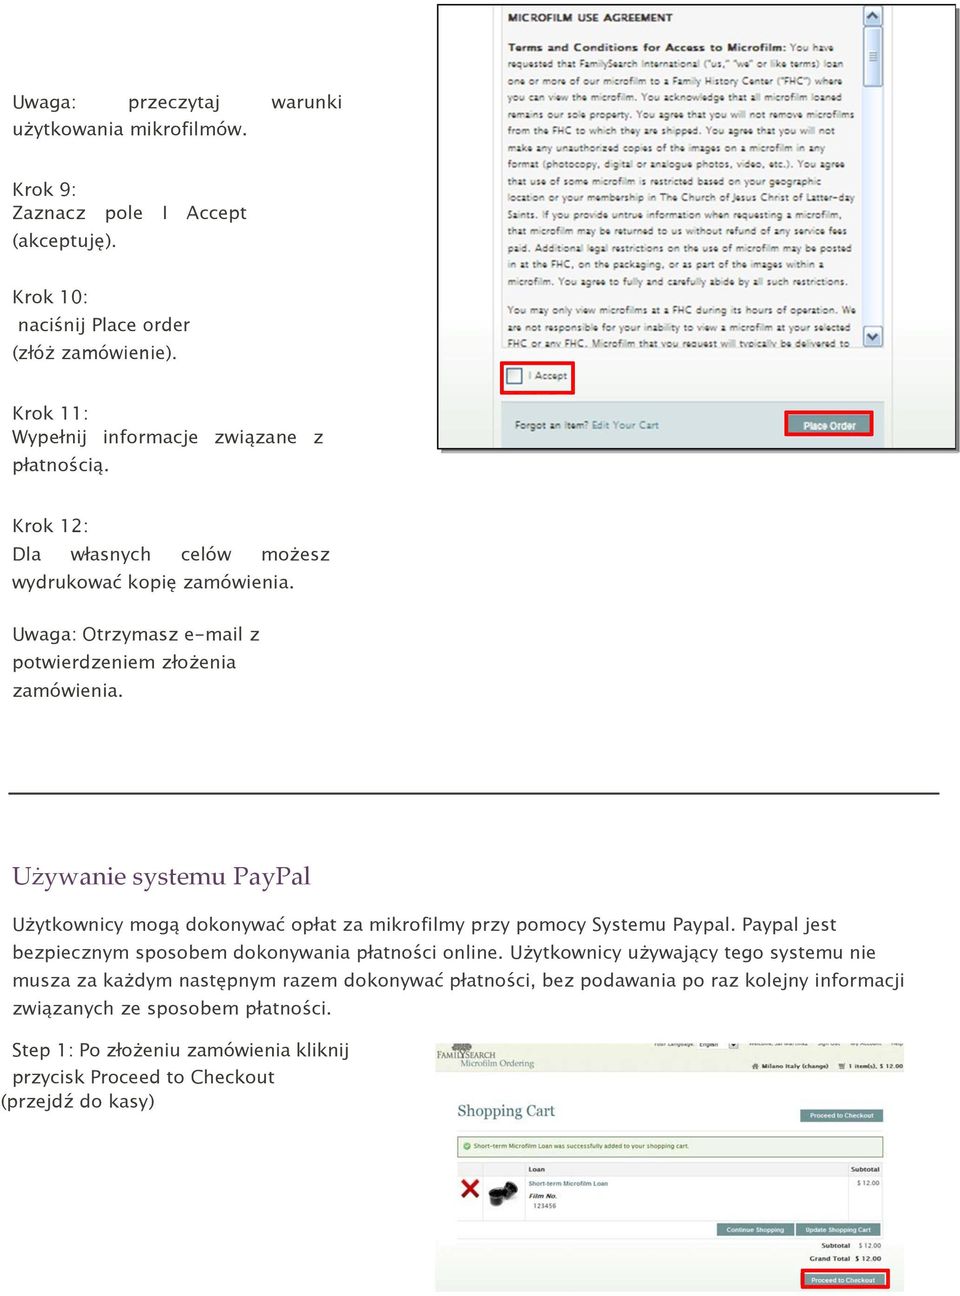 Używanie systemu PayPal Użytkownicy mogą dokonywać opłat za mikrofilmy przy pomocy Systemu Paypal. Paypal jest bezpiecznym sposobem dokonywania płatności online.